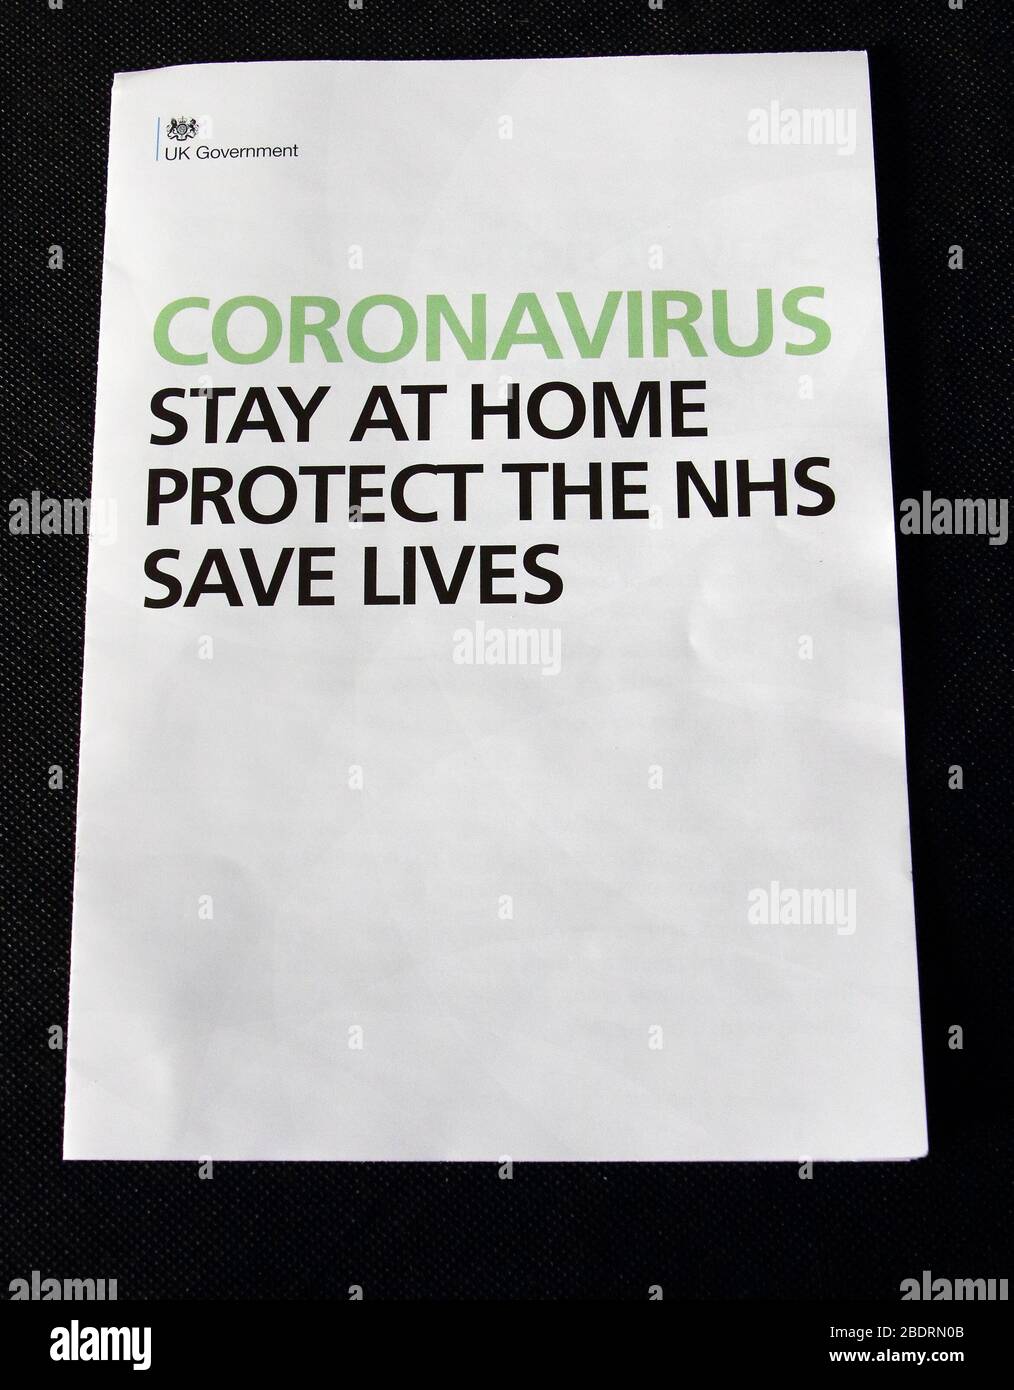 REINO UNIDO. Una carta del primer ministro británico Boris Johnson sobre el coronavirus ha sido enviada a todos los hogares del Reino Unido instando al público a quedarse en casa. Alrededor de 30 millones de hogares del Reino Unido recibirán la carta COVID-19, junto con un folleto sobre los síntomas del coronavirus, las directrices y la sensibilización. UK 6 de abril de 2020 Ref: LMK73-J6425-060420 Keith Mayhew/Landmark Media Foto de stock